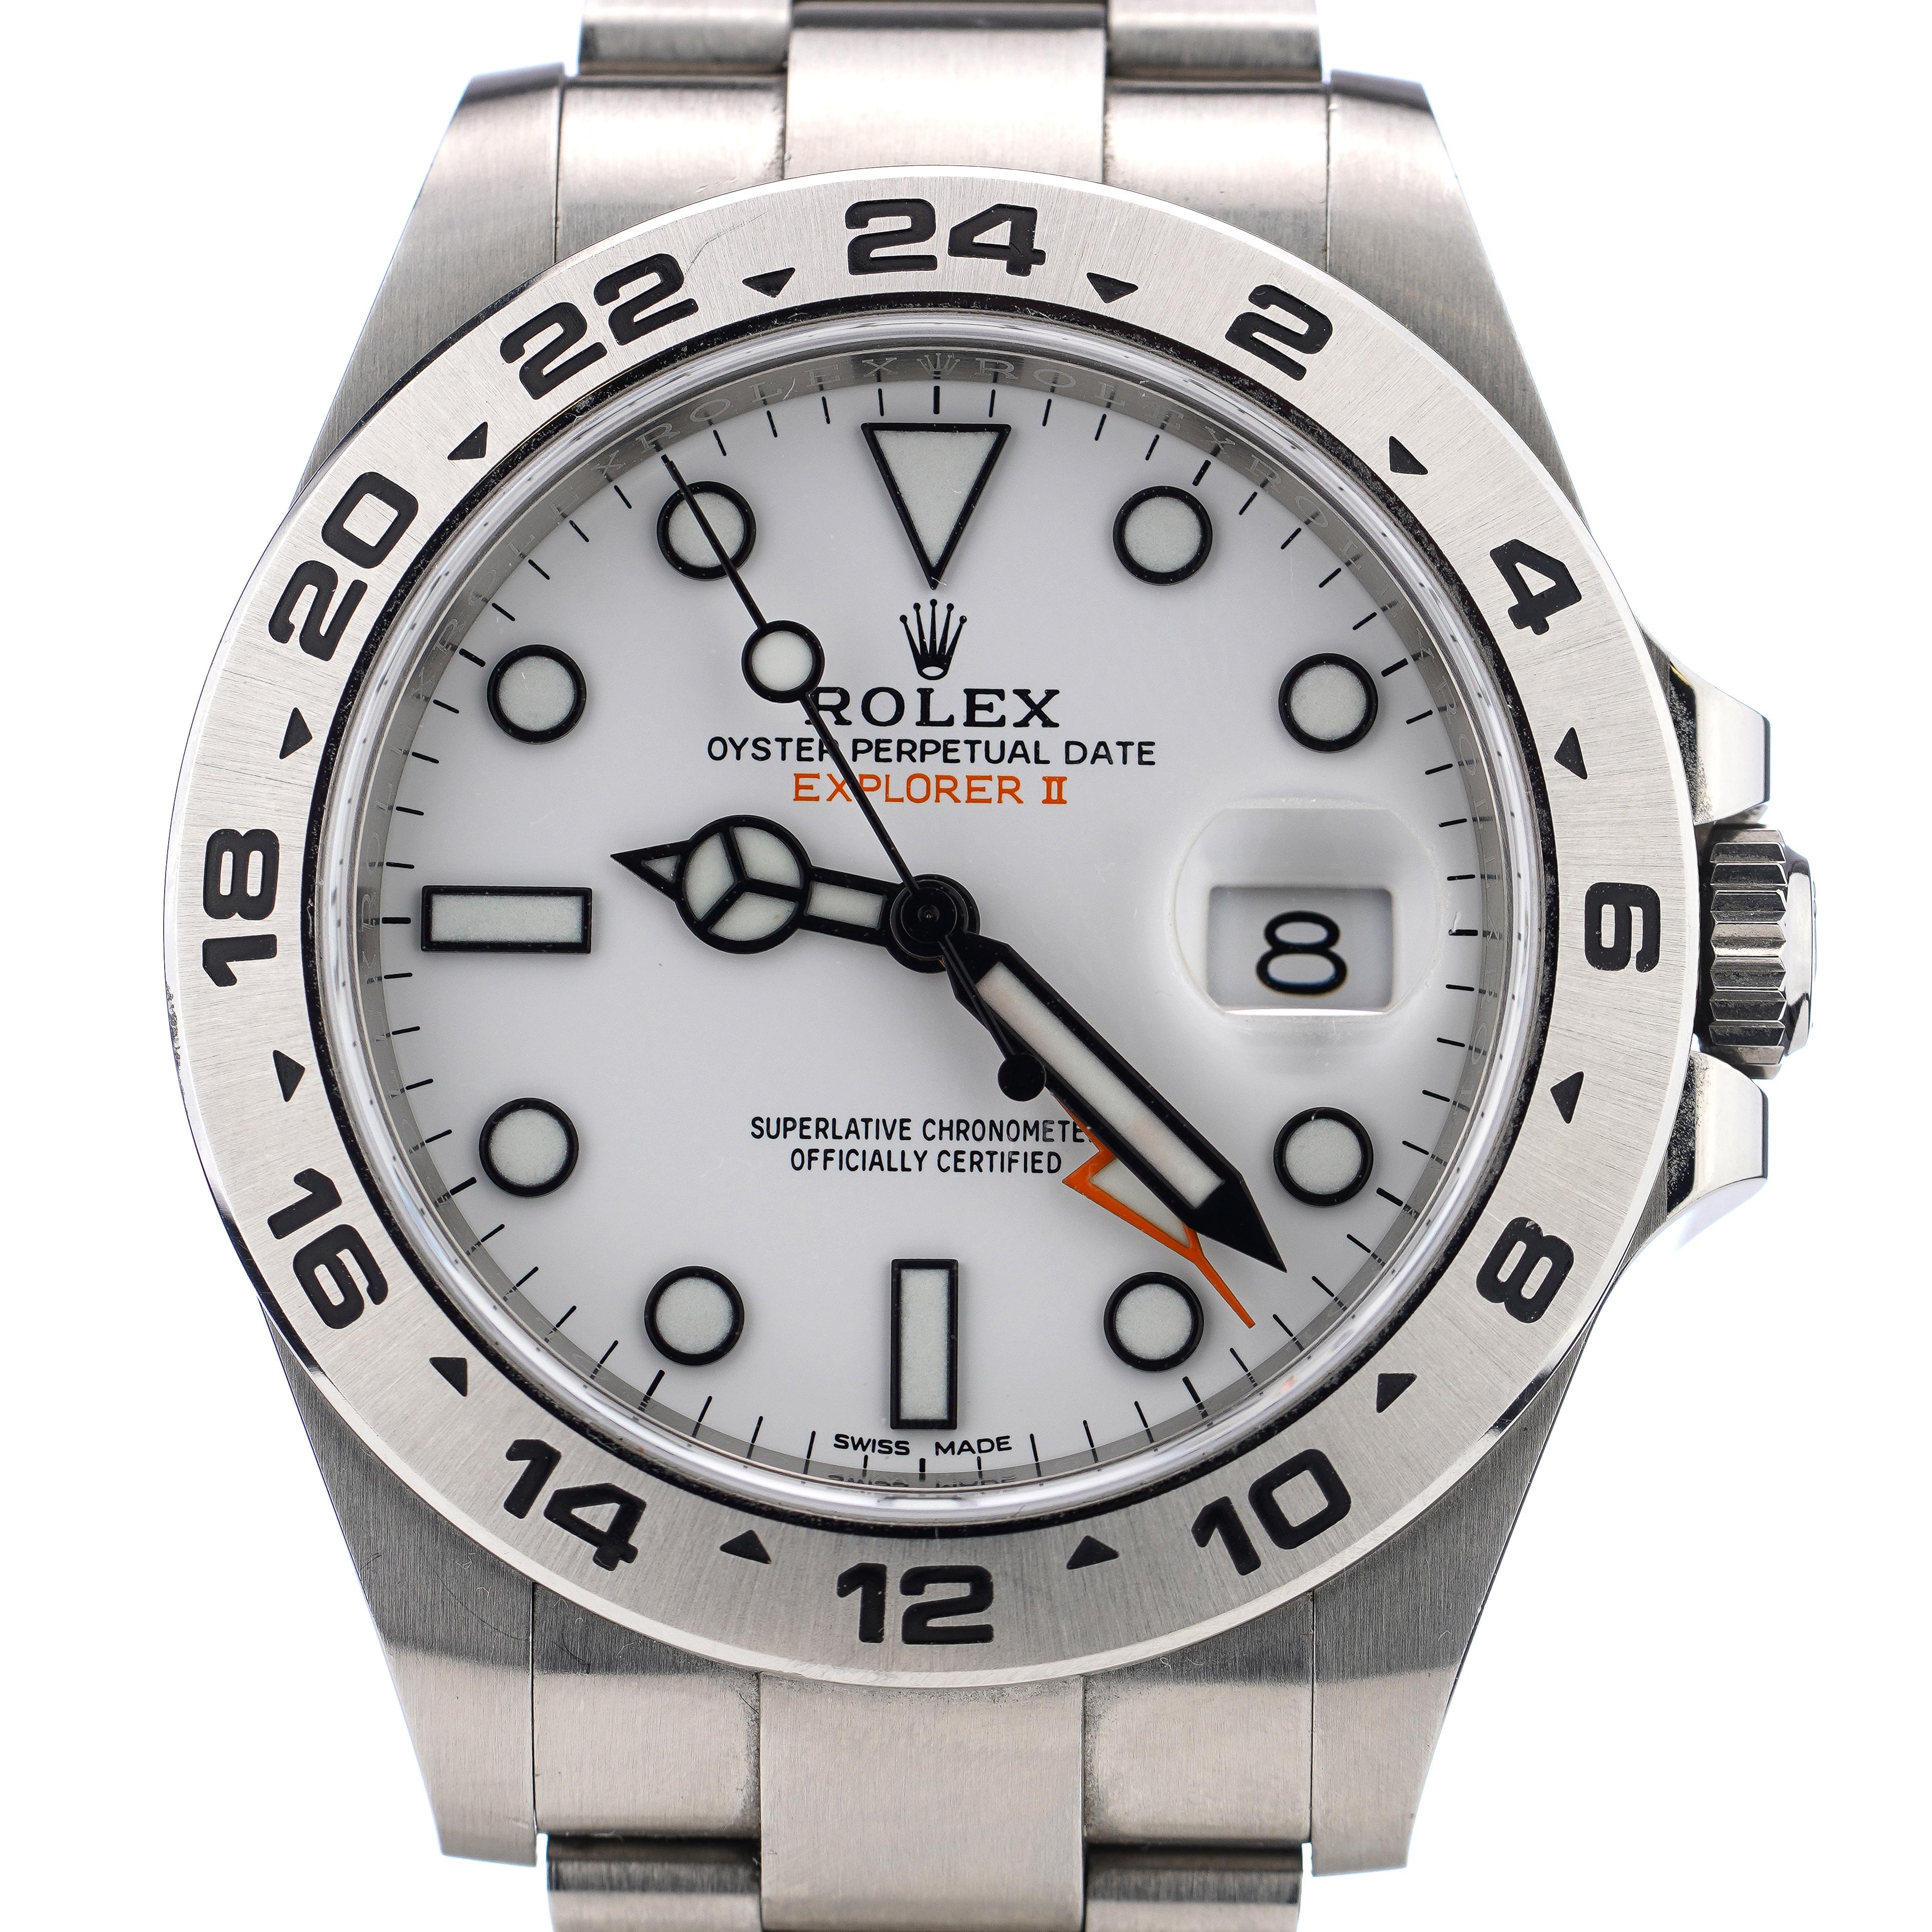 Rolex Oyster Perpetual Explorer II 216570 
Fabriqué en 2018, Date d'achat 2019 

Diamètre du boîtier : 42 mm
Mouvement : Automatique
Modèle n° 216570 
Matériau du bracelet de la montre : Acier inoxydable
Matériau du boîtier : Inox 
Cadran : Blanc